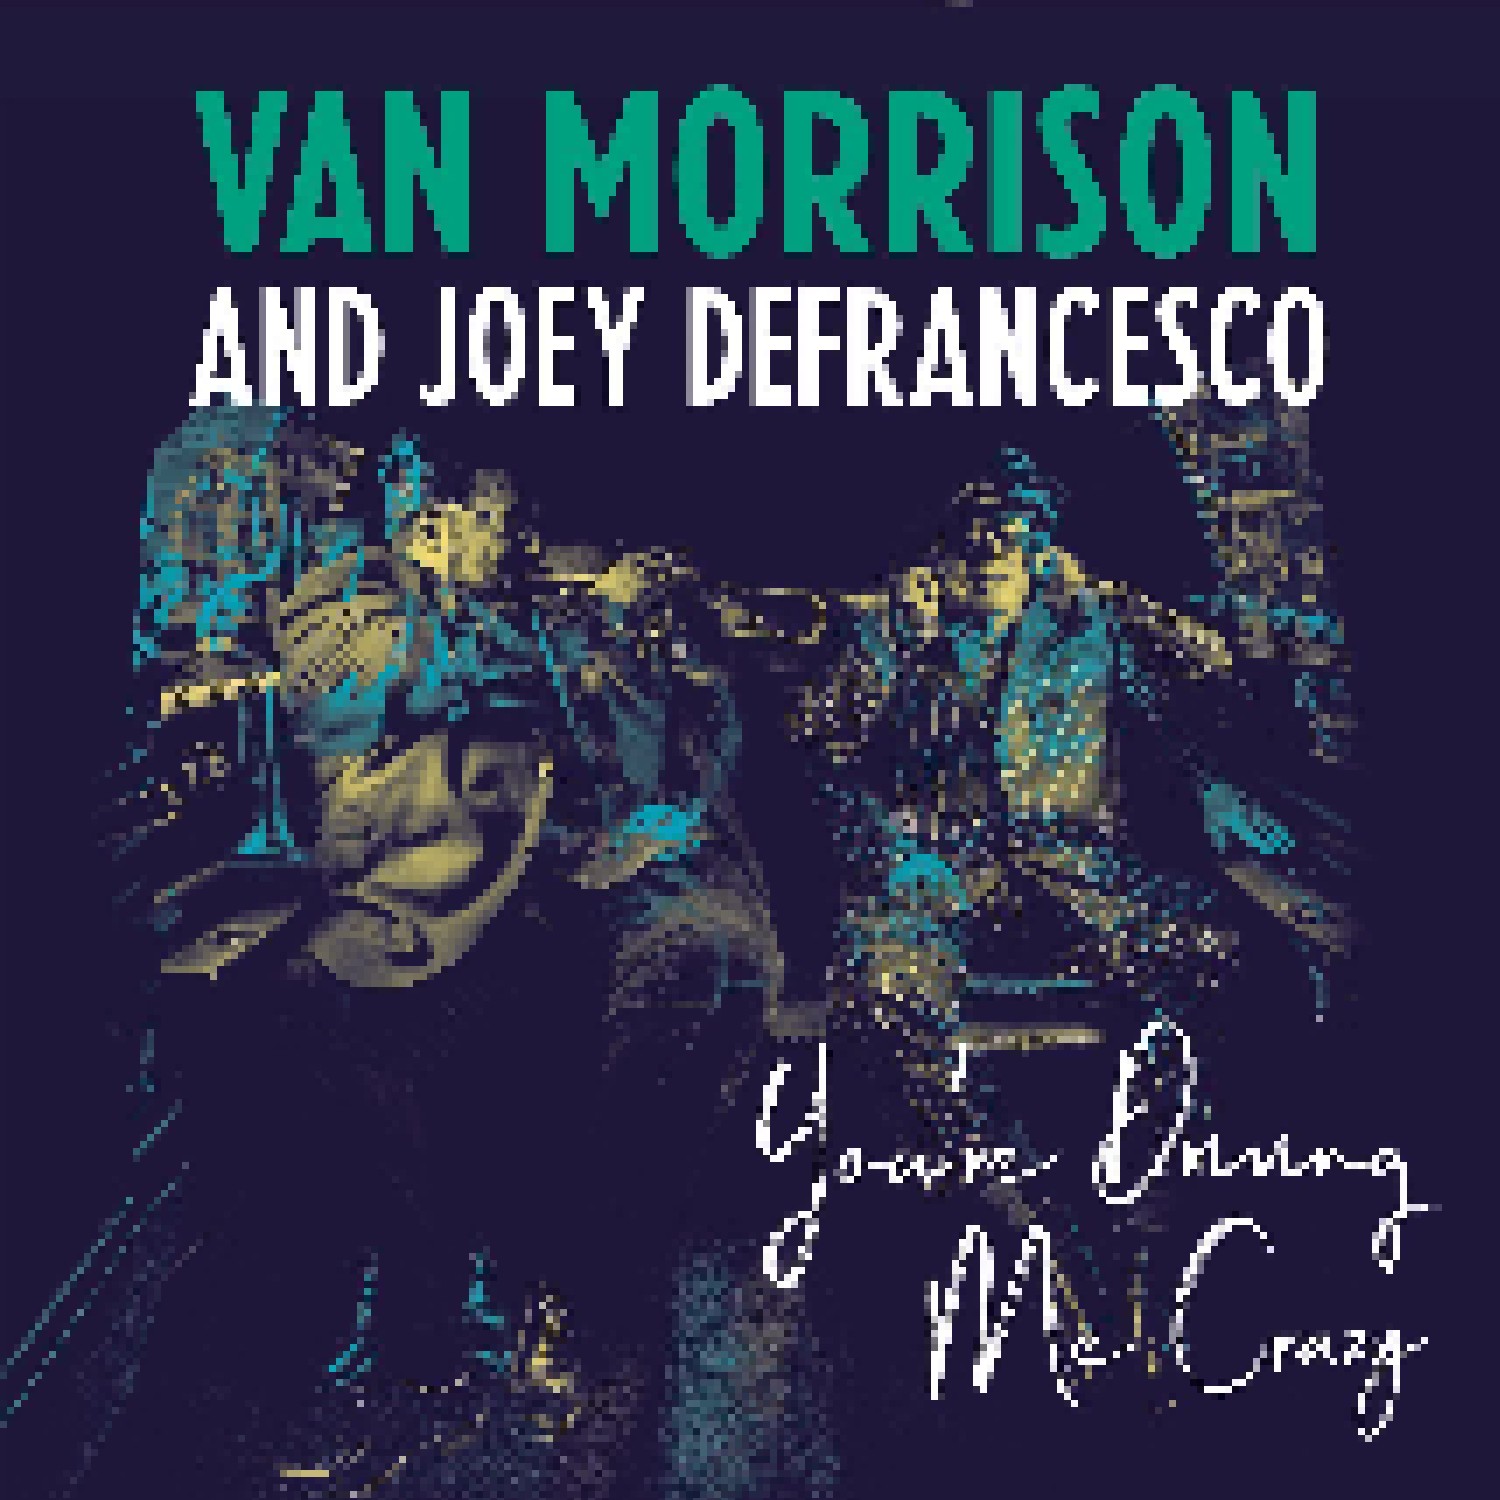 You Re Driving Me Crazy Cd 2018 Digisleeve Von Van Morrison And Joey Defrancesco